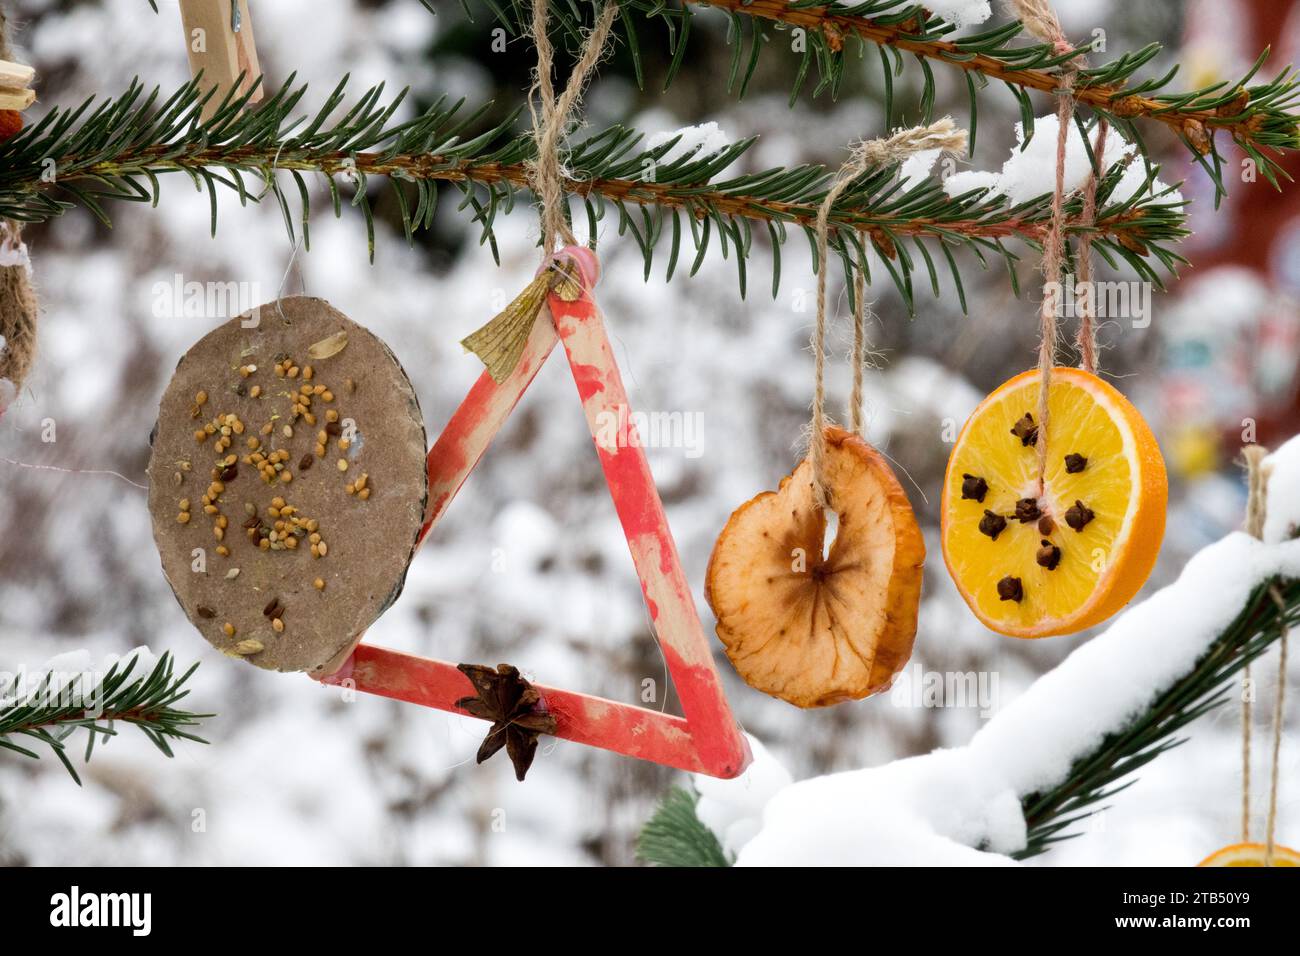 Hausgemachte Weihnachtsdekorationen, die draußen am Weihnachtsbaum hängen, runde Orangenscheiben und andere Dekorationen, Früchte Stockfoto